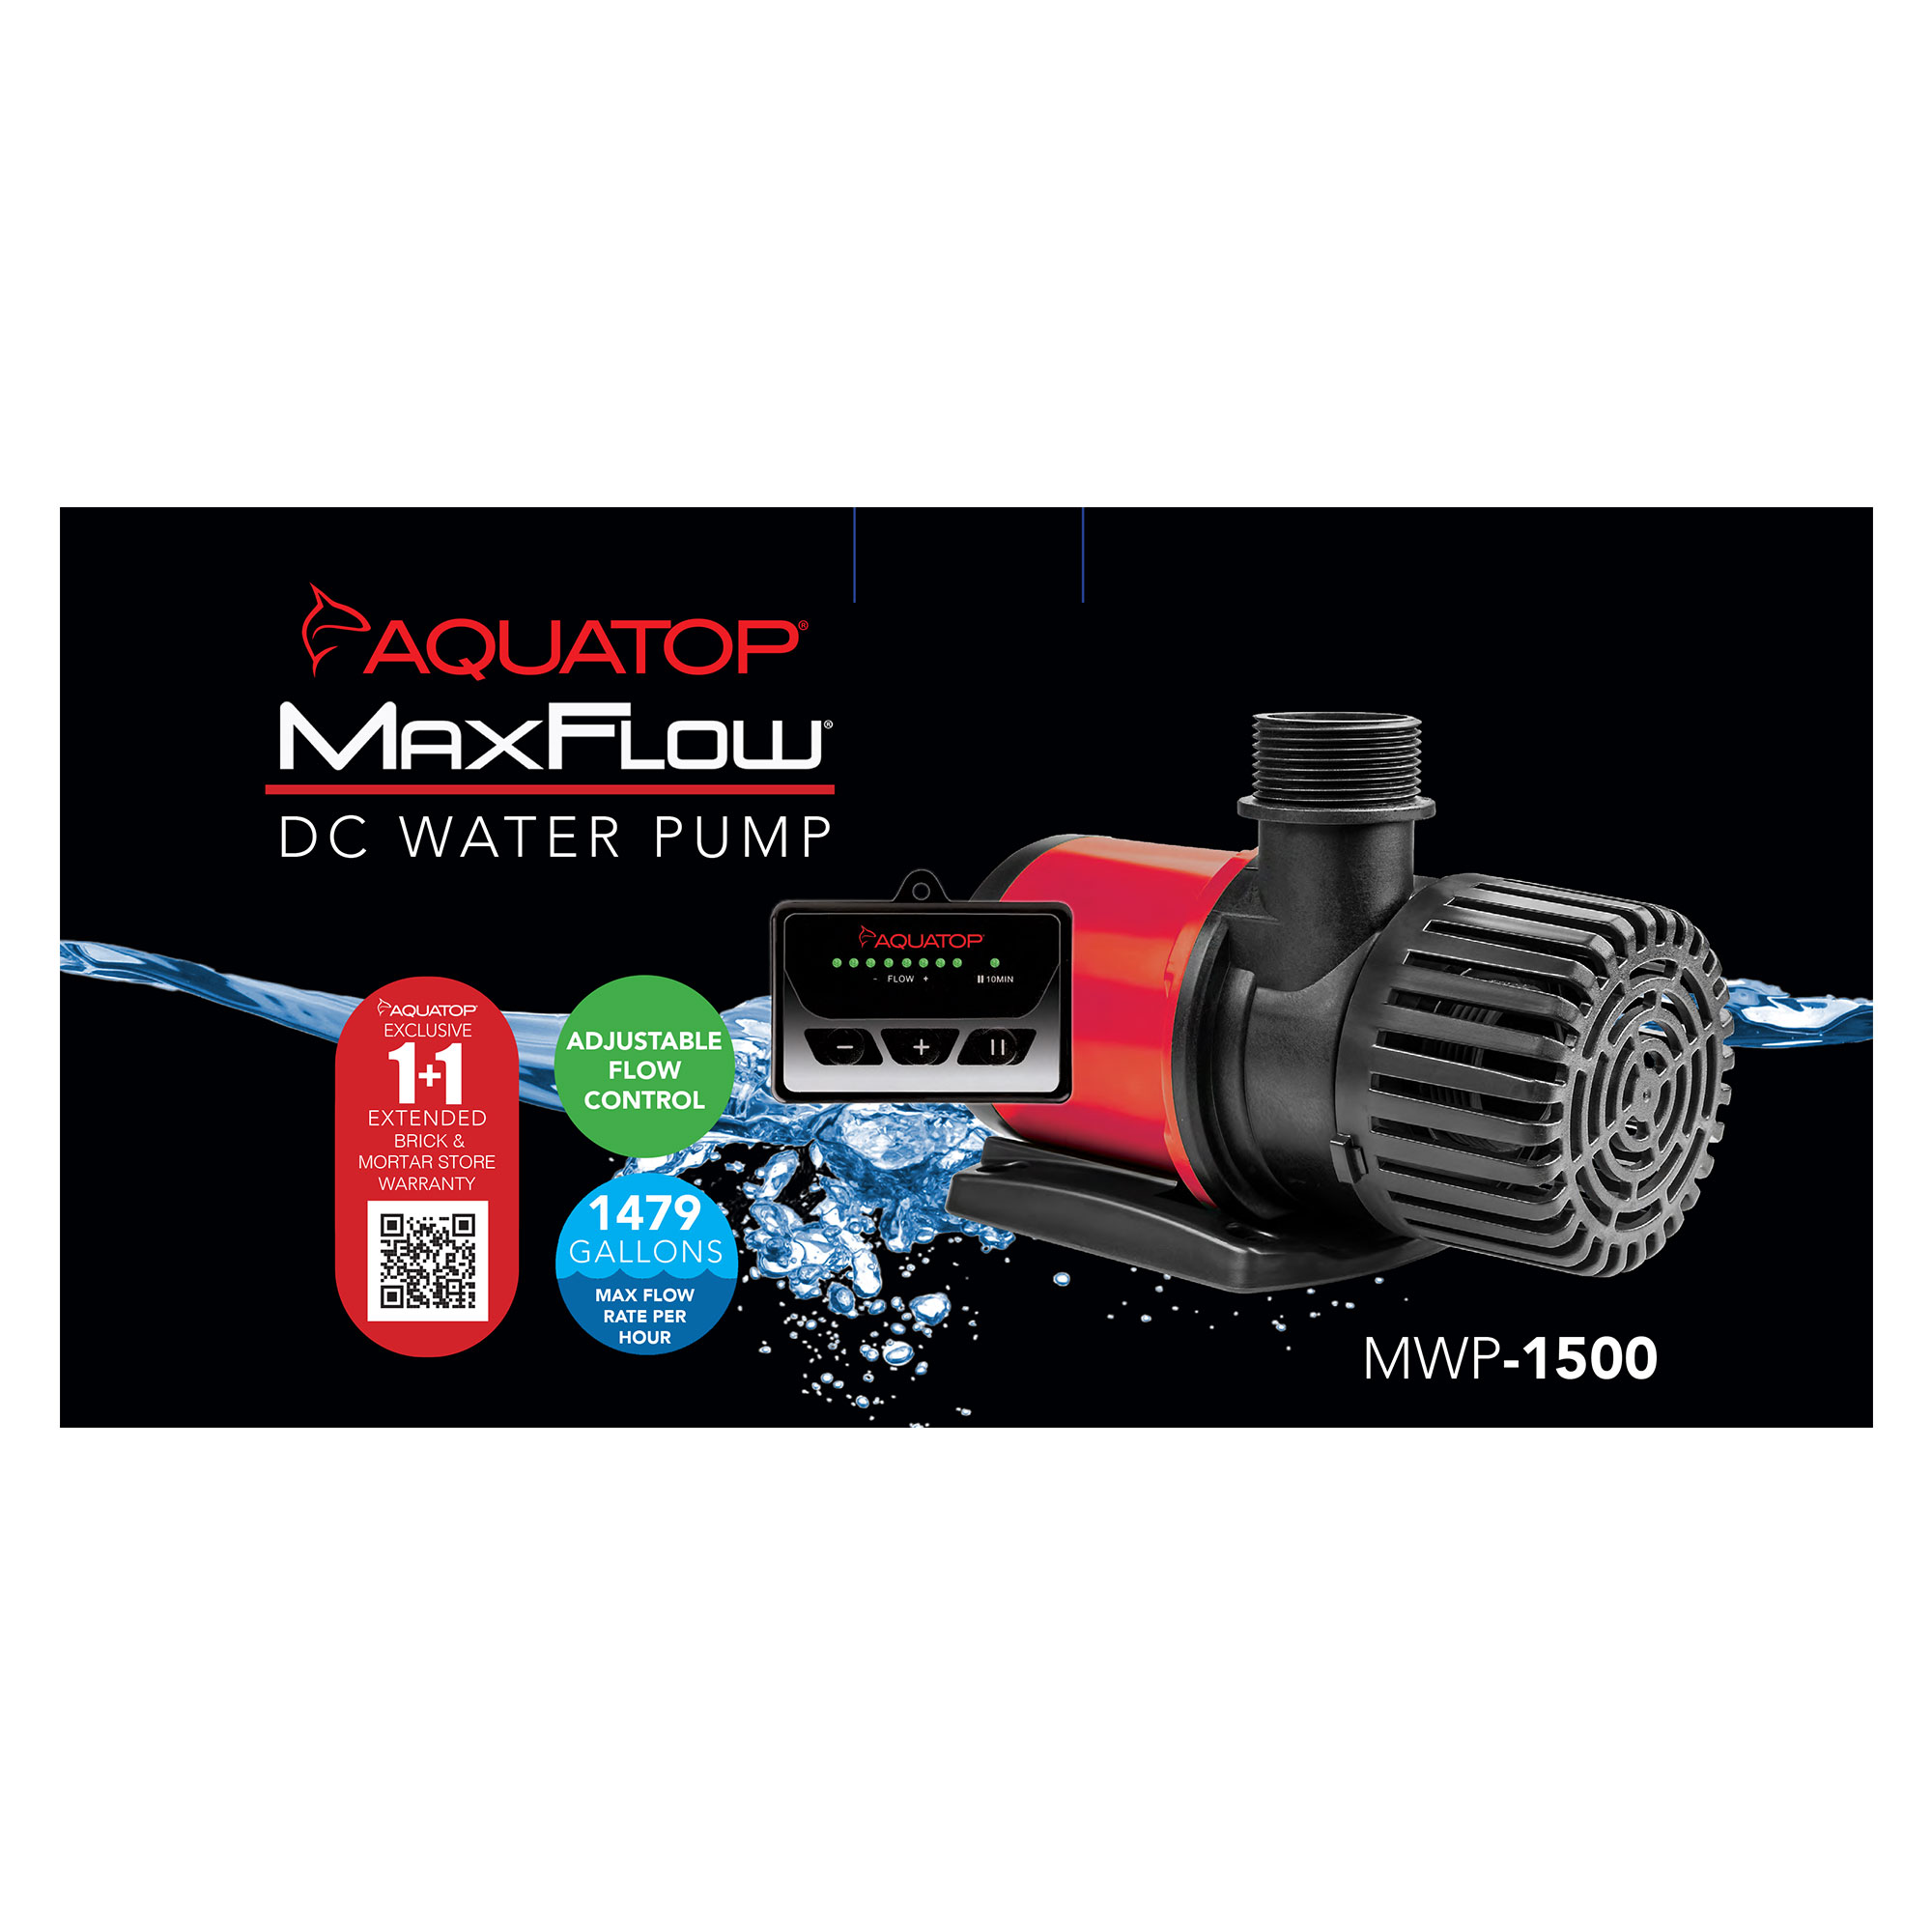 Maxflow DC Water Pumps